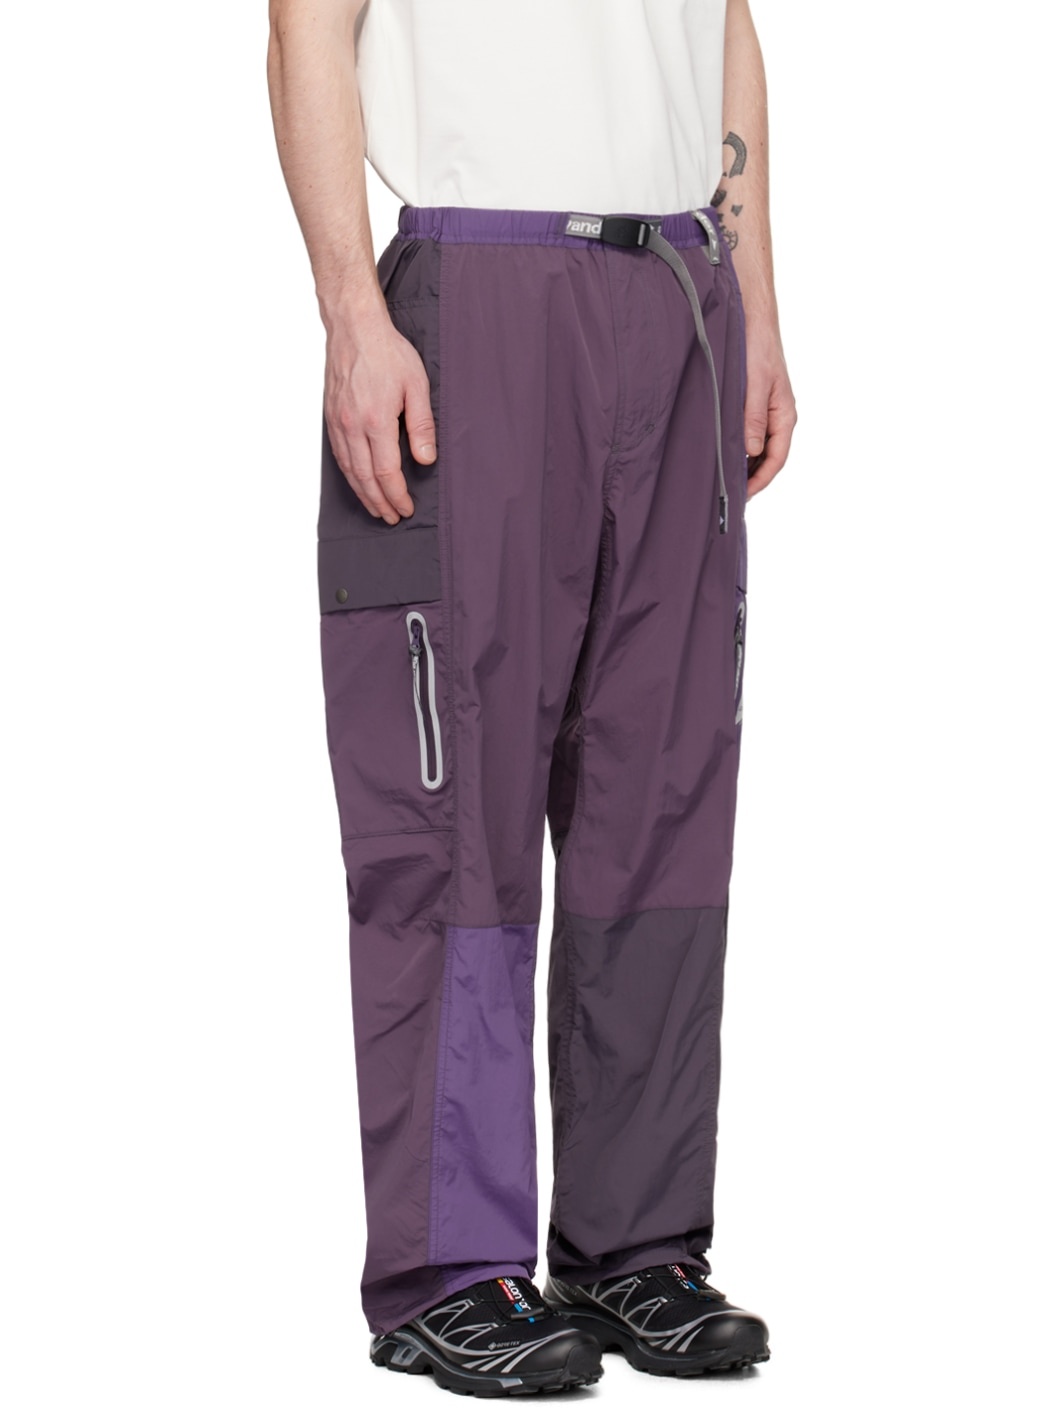 Purple Gramicci Edition Shorts - 2